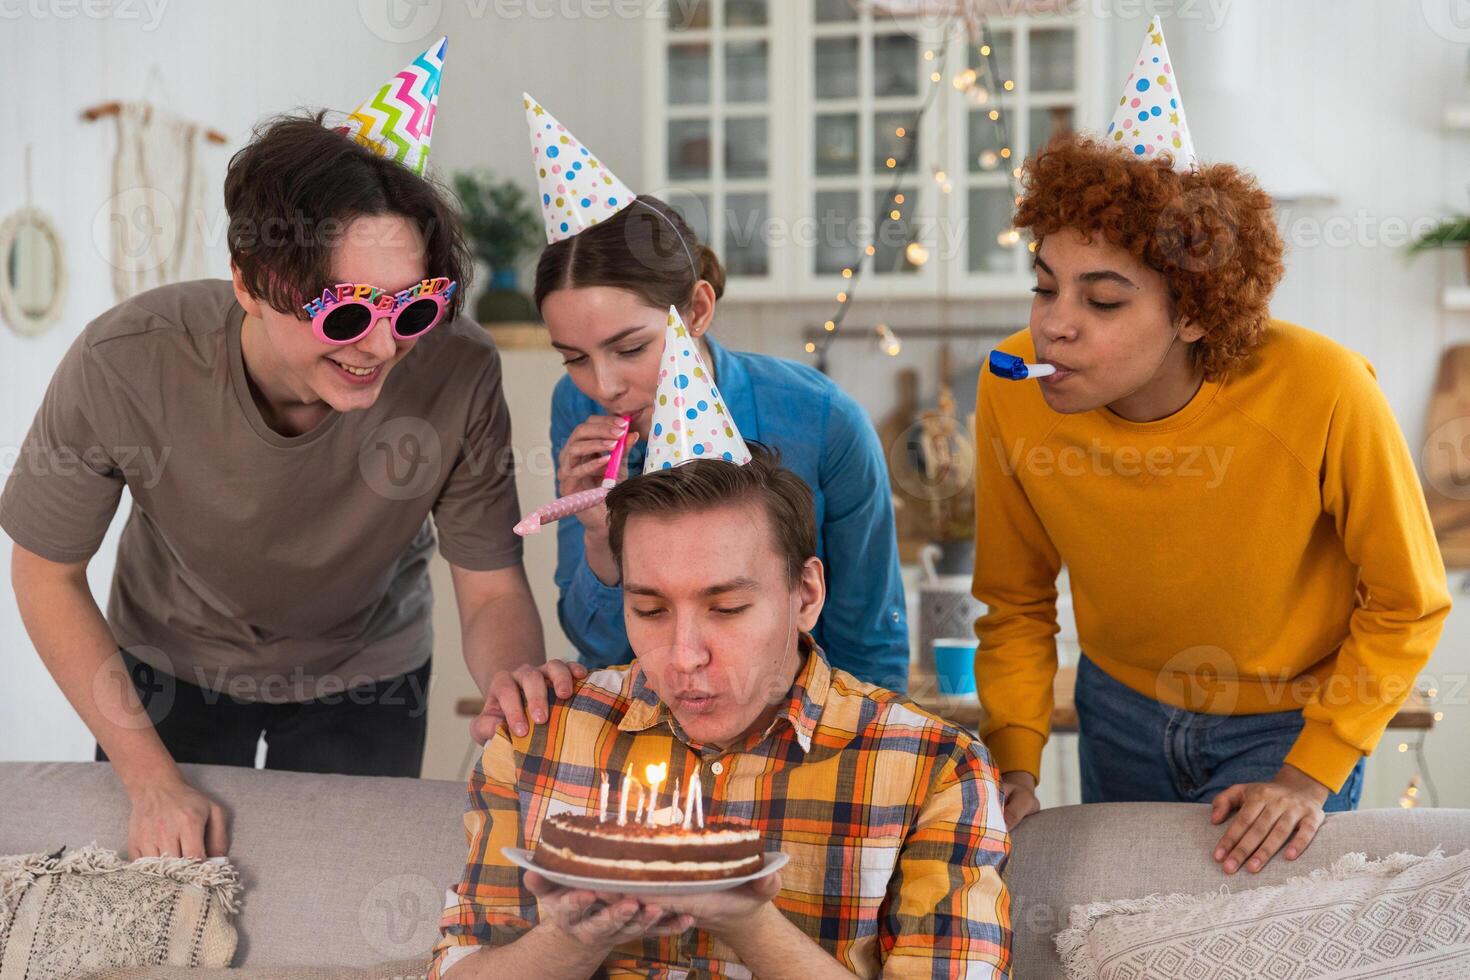 machen ein Wunsch. Mann tragen Party Deckel weht aus Verbrennung Kerzen auf Geburtstag Kuchen. glücklich Geburtstag Party. Gruppe von freunde wünscht sich Kerl glücklich Geburtstag. Menschen feiern Geburtstag mit Party beim Zuhause foto